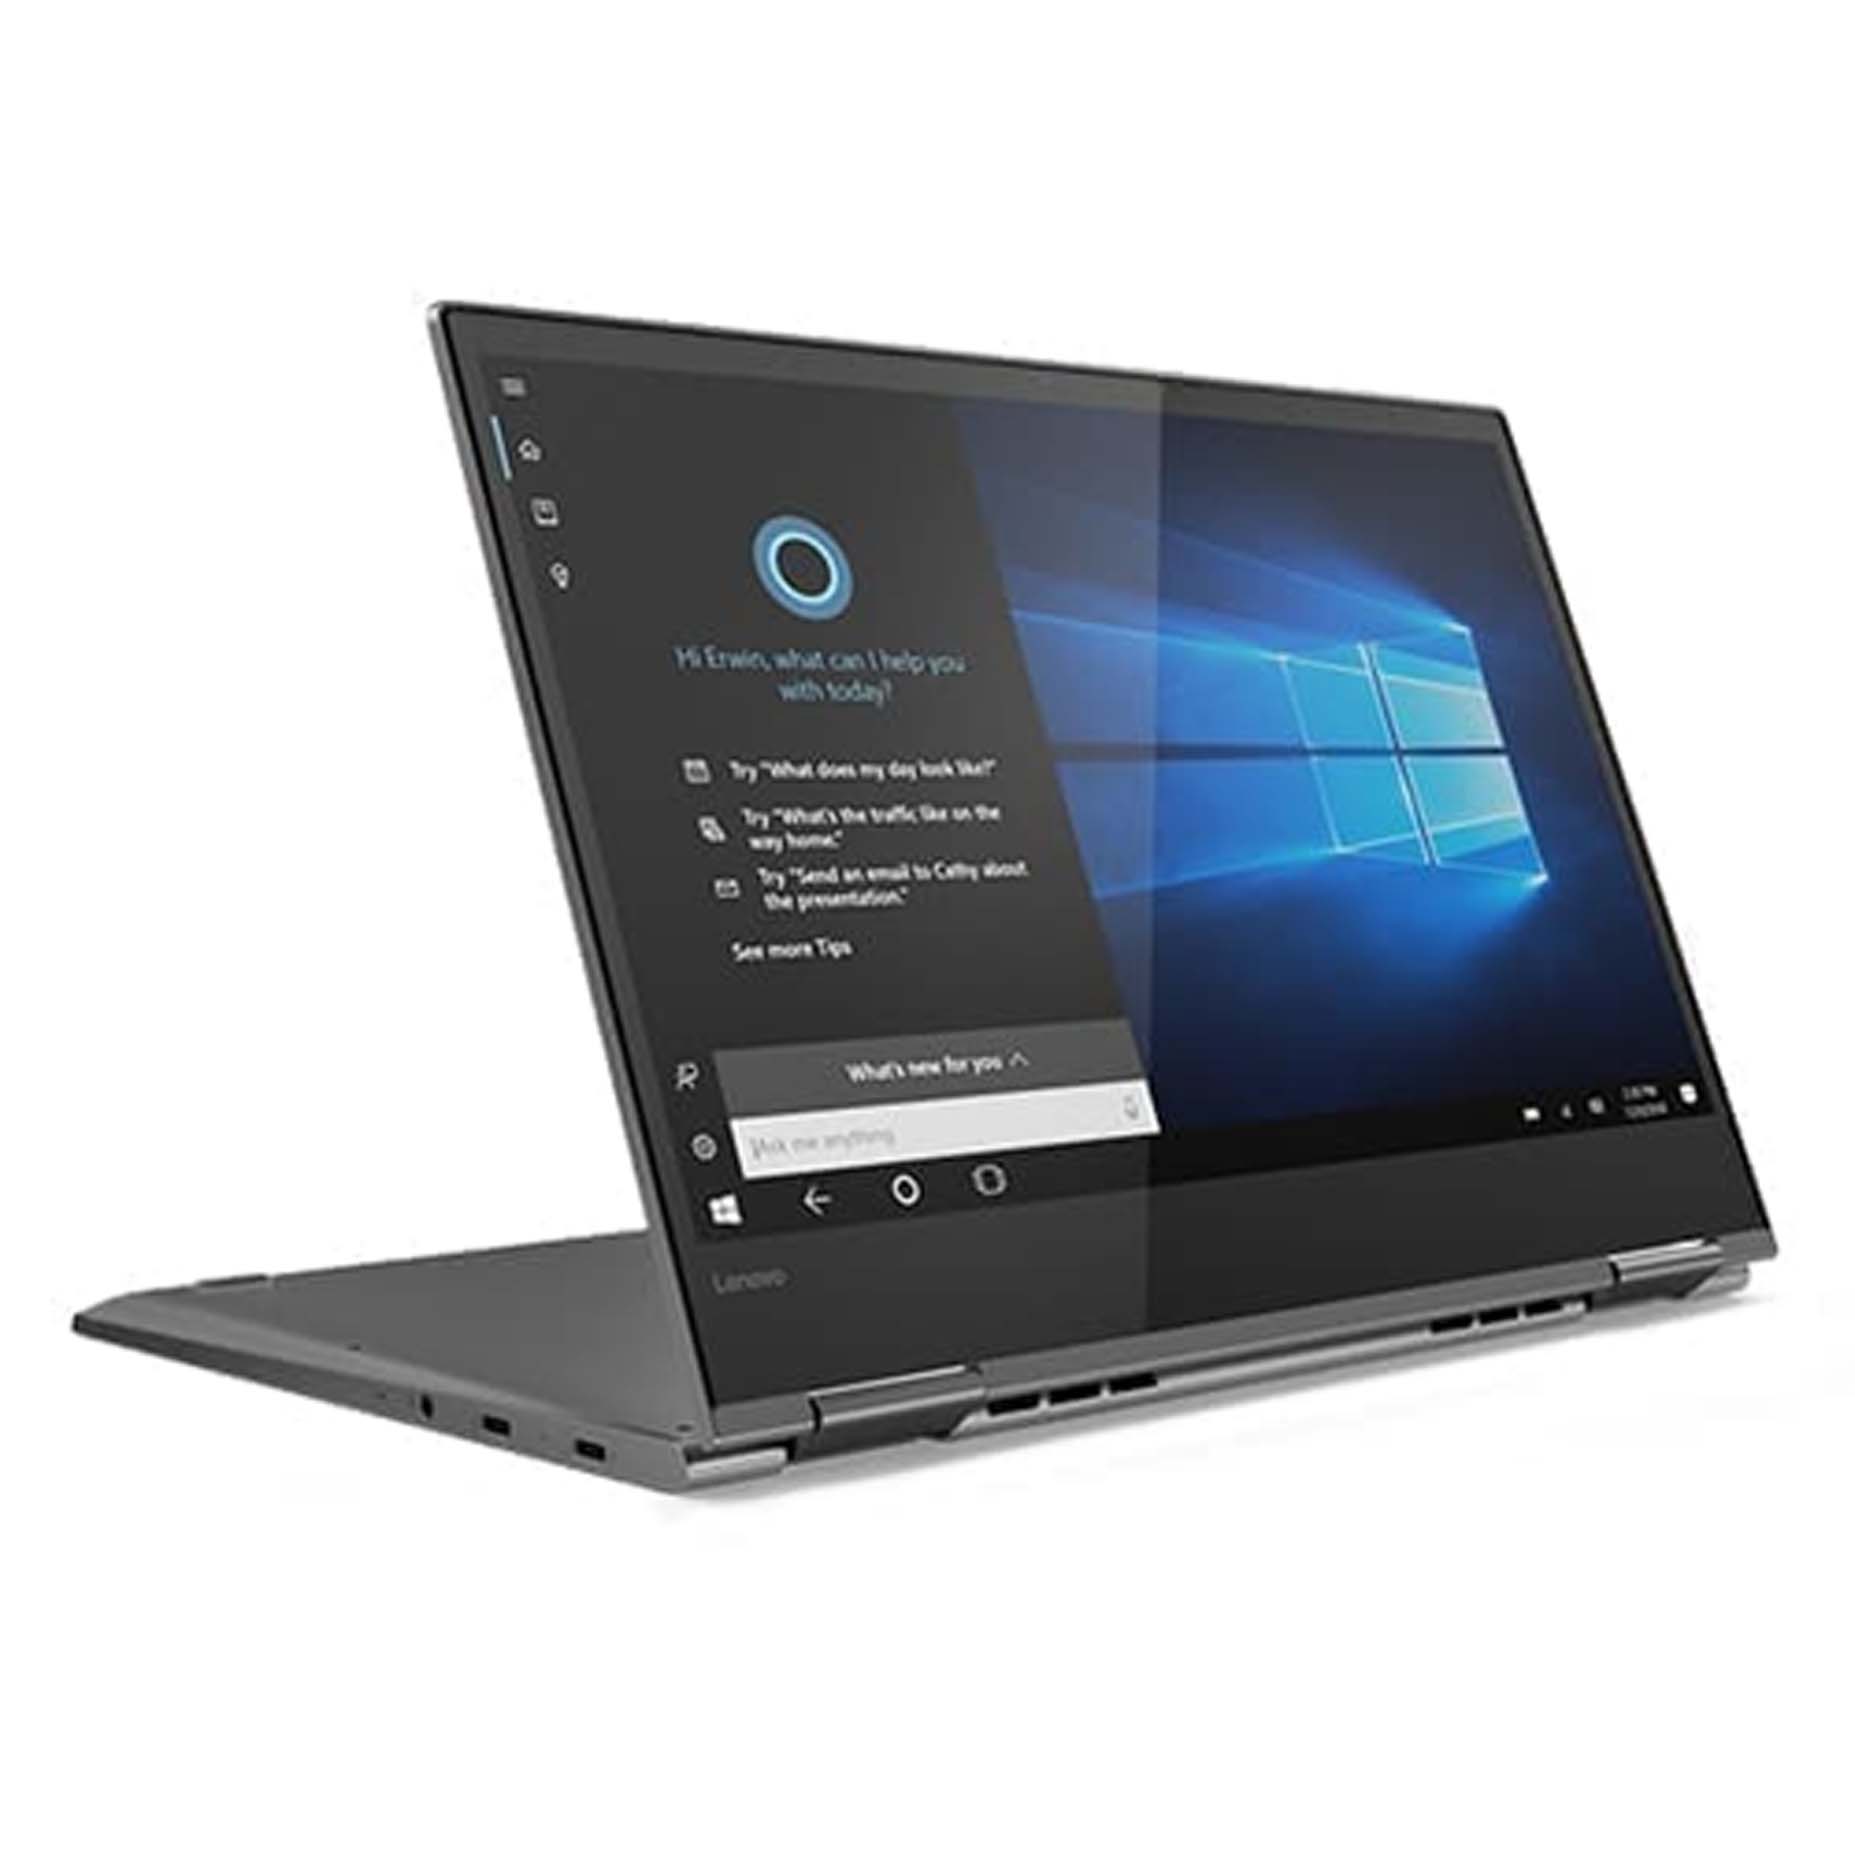 Harga Lenovo Yoga 520-14IKB PRID Laptop i3-7020U 8GB 1TB MX130 2GB Win10 14 Inch Touch Black